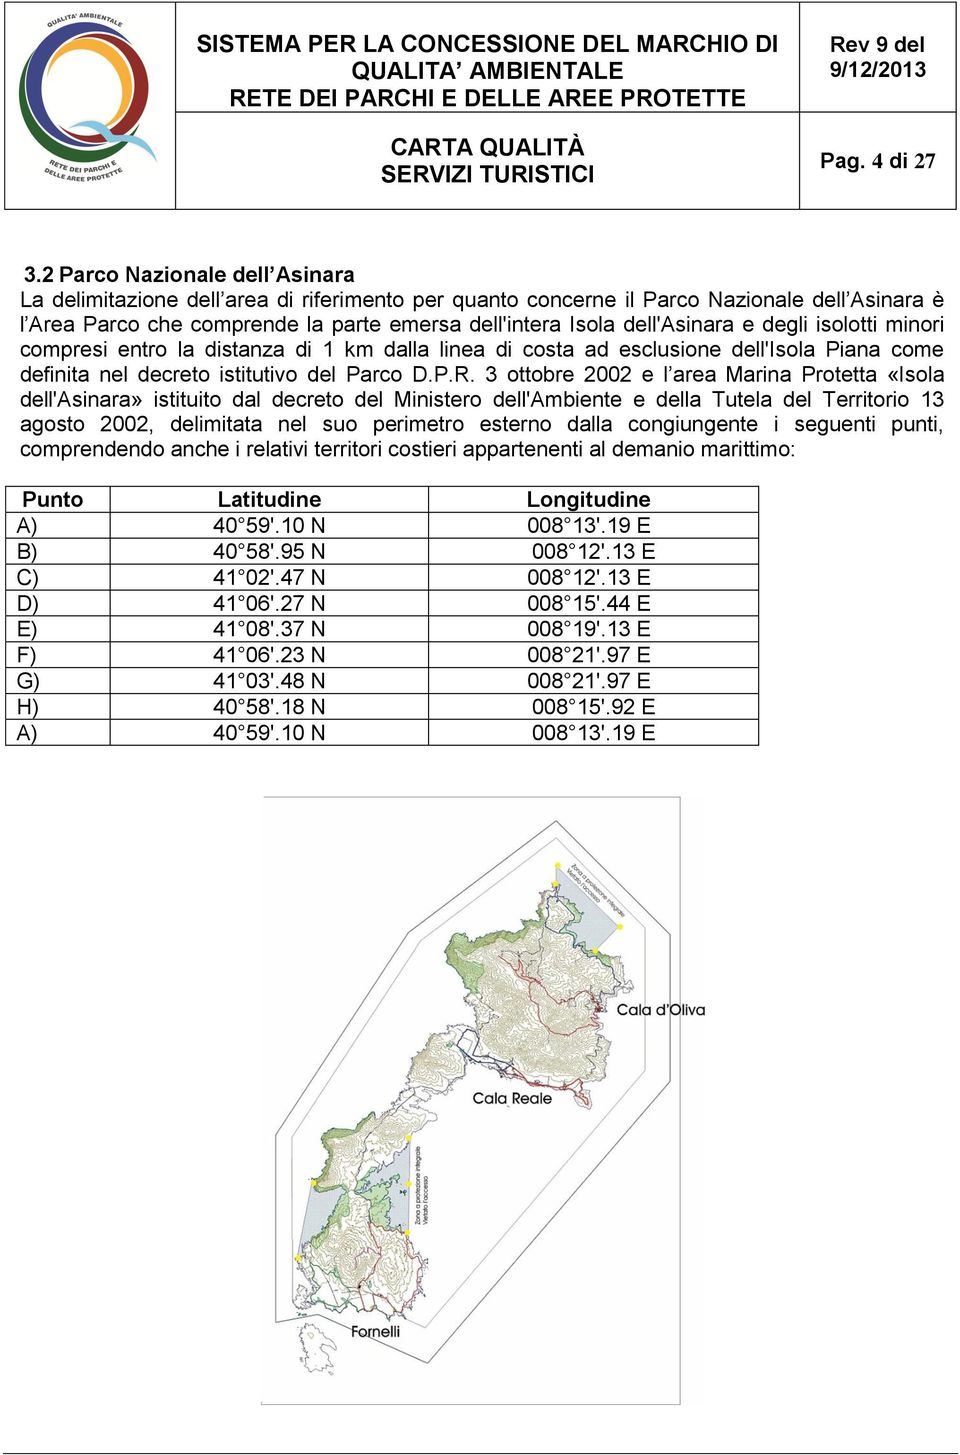 dell'asinara e degli isolotti minori compresi entro la distanza di 1 km dalla linea di costa ad esclusione dell'isola Piana come definita nel decreto istitutivo del Parco D.P.R.